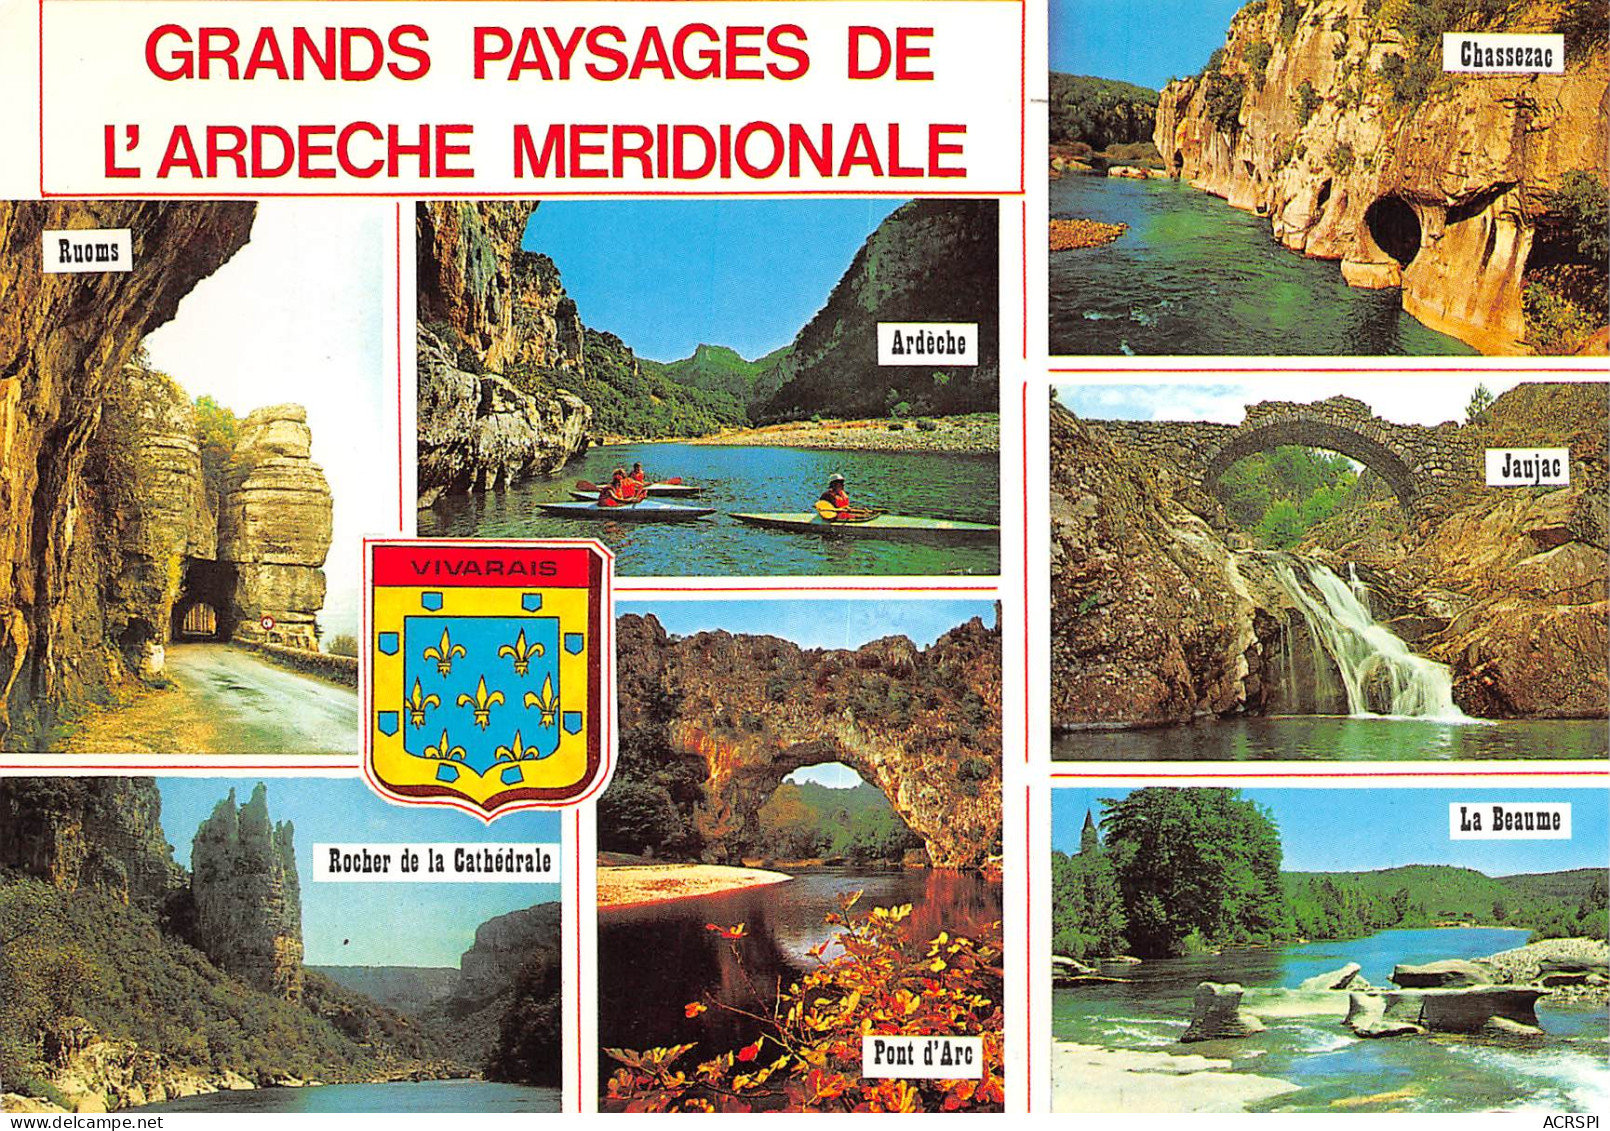 Grands Paysages De L'ARDECHE Meridionale Jausac Ruoms La Beaume  21 (scan Recto Verso)ME2692VIC - Vallon Pont D'Arc